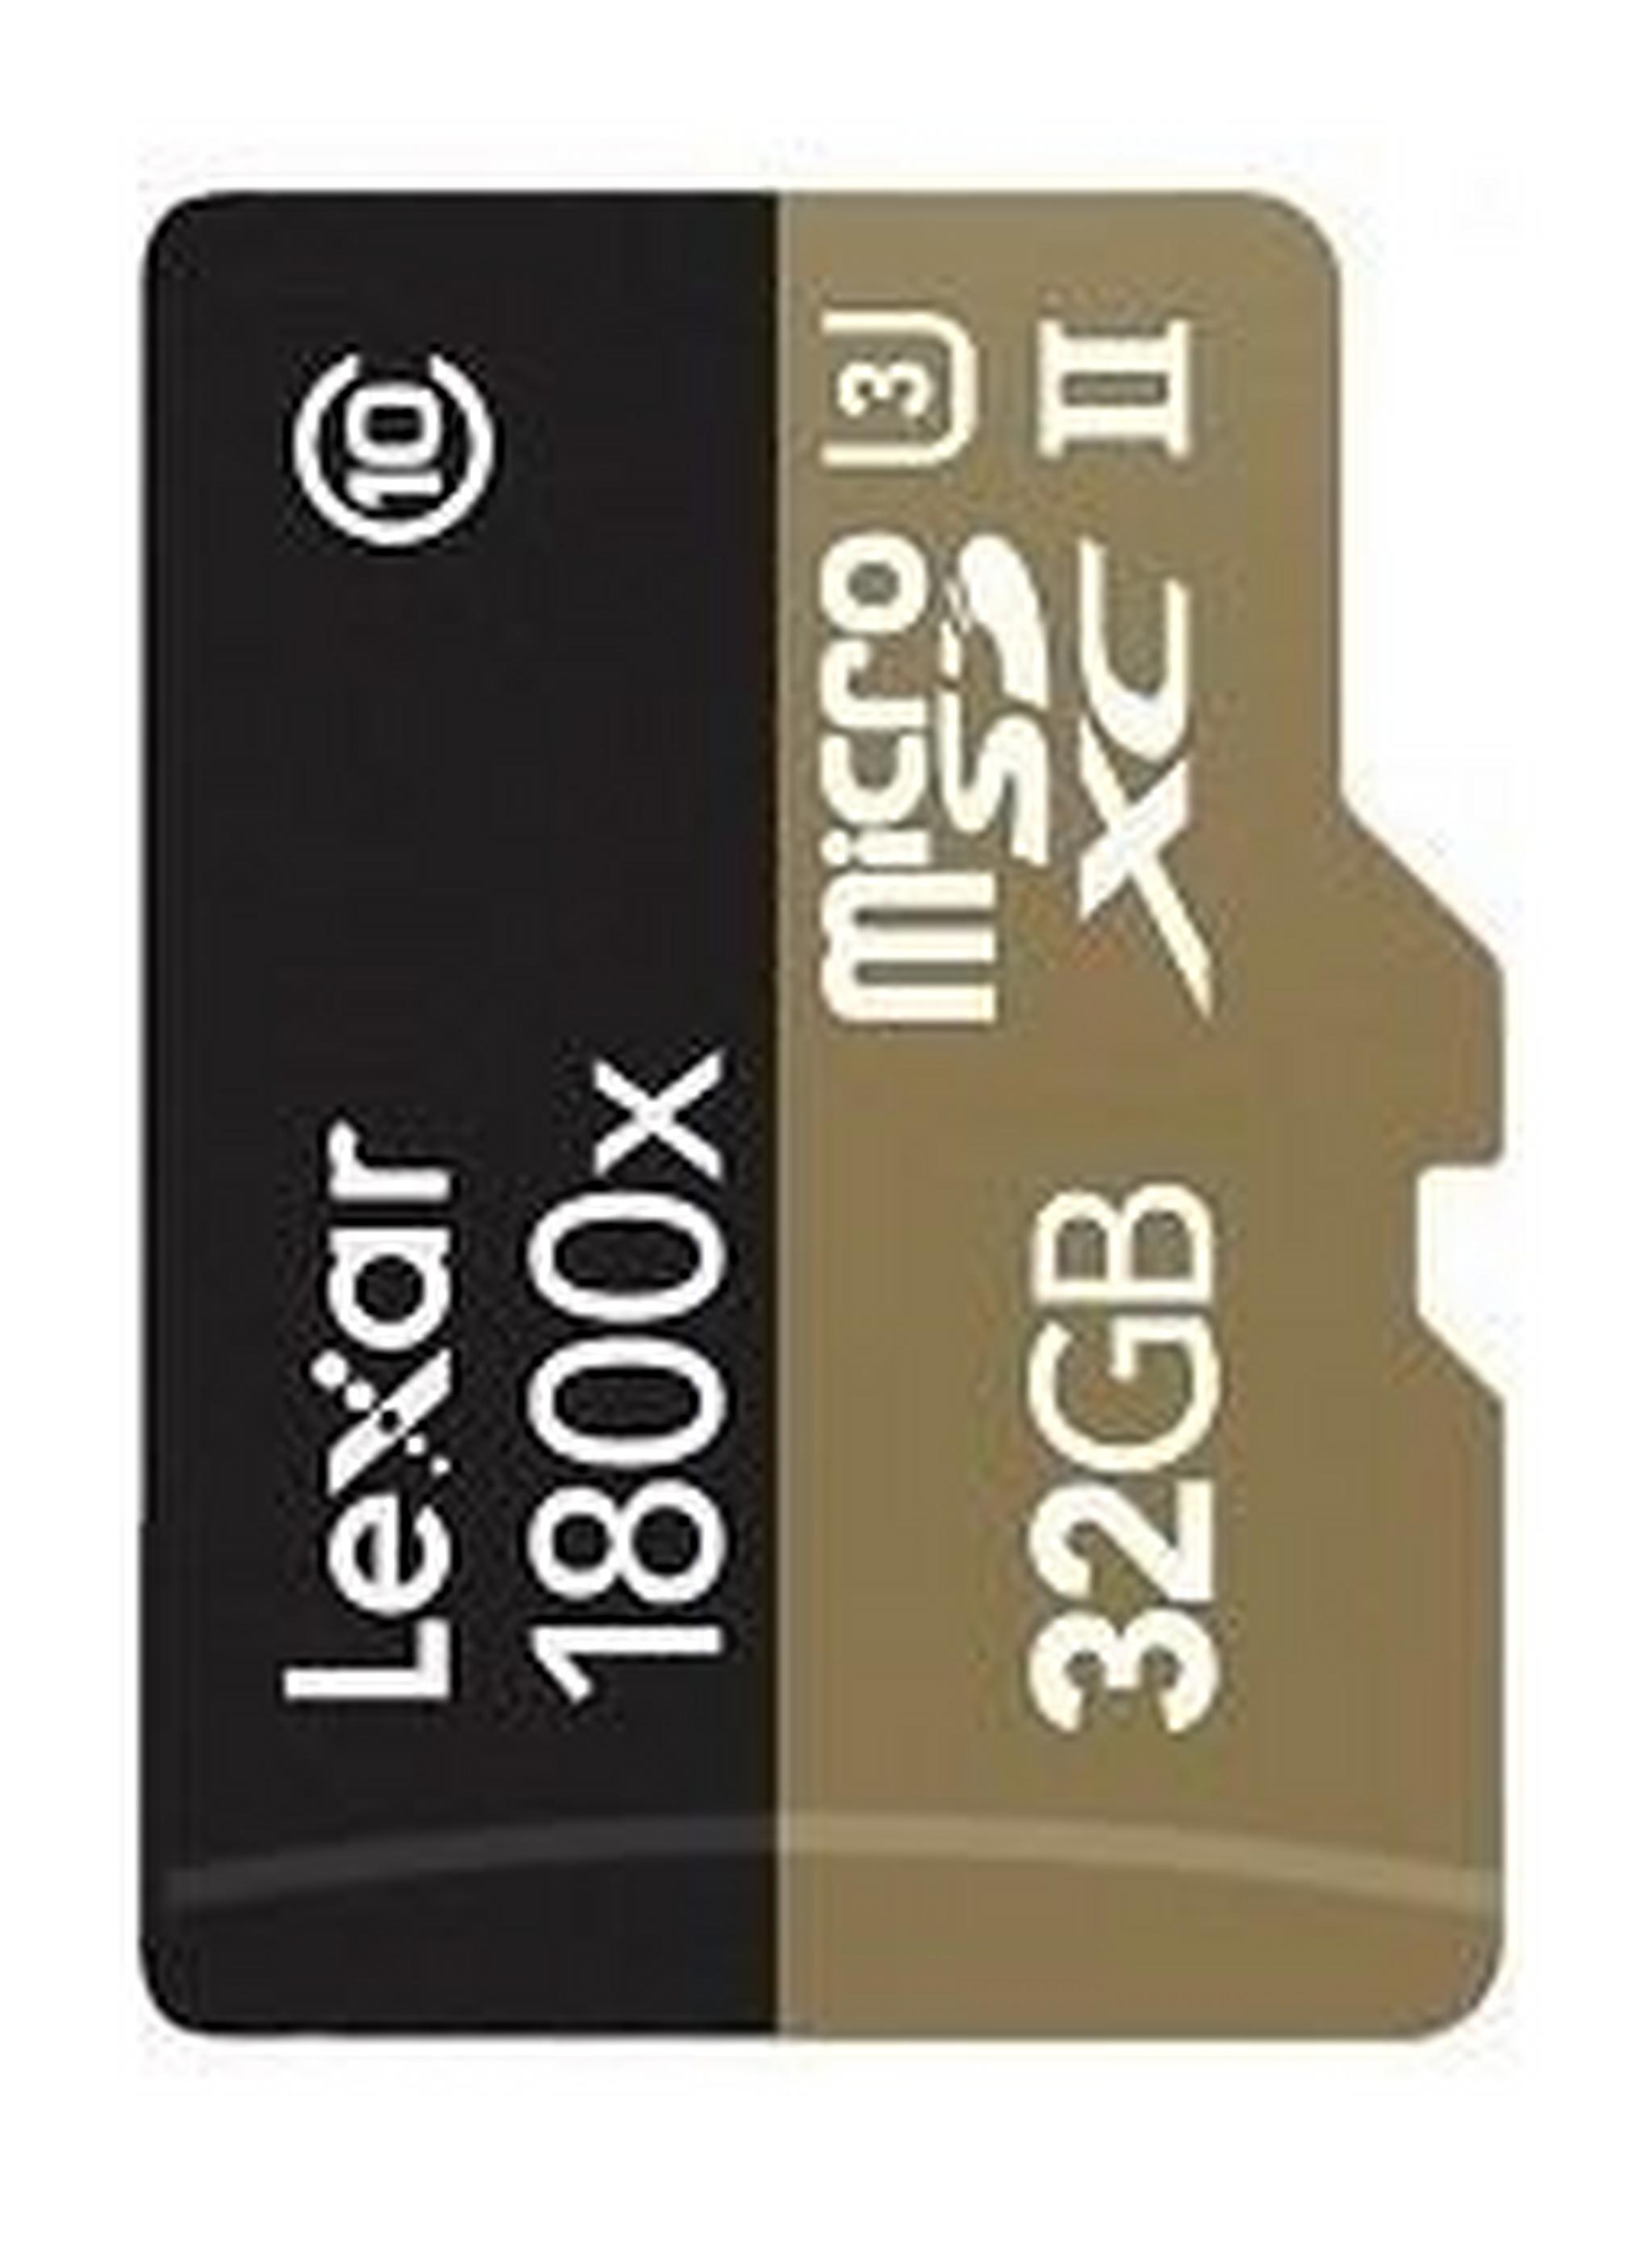 بطاقة ذاكرة احترافية سعة ٣٢ جيجابايت من ليكسار – سرعة ١٨٠٠ إكس - ميكرو إس دي إتش سي (يو ٣) – سرعة فائقة ٢ - أسود